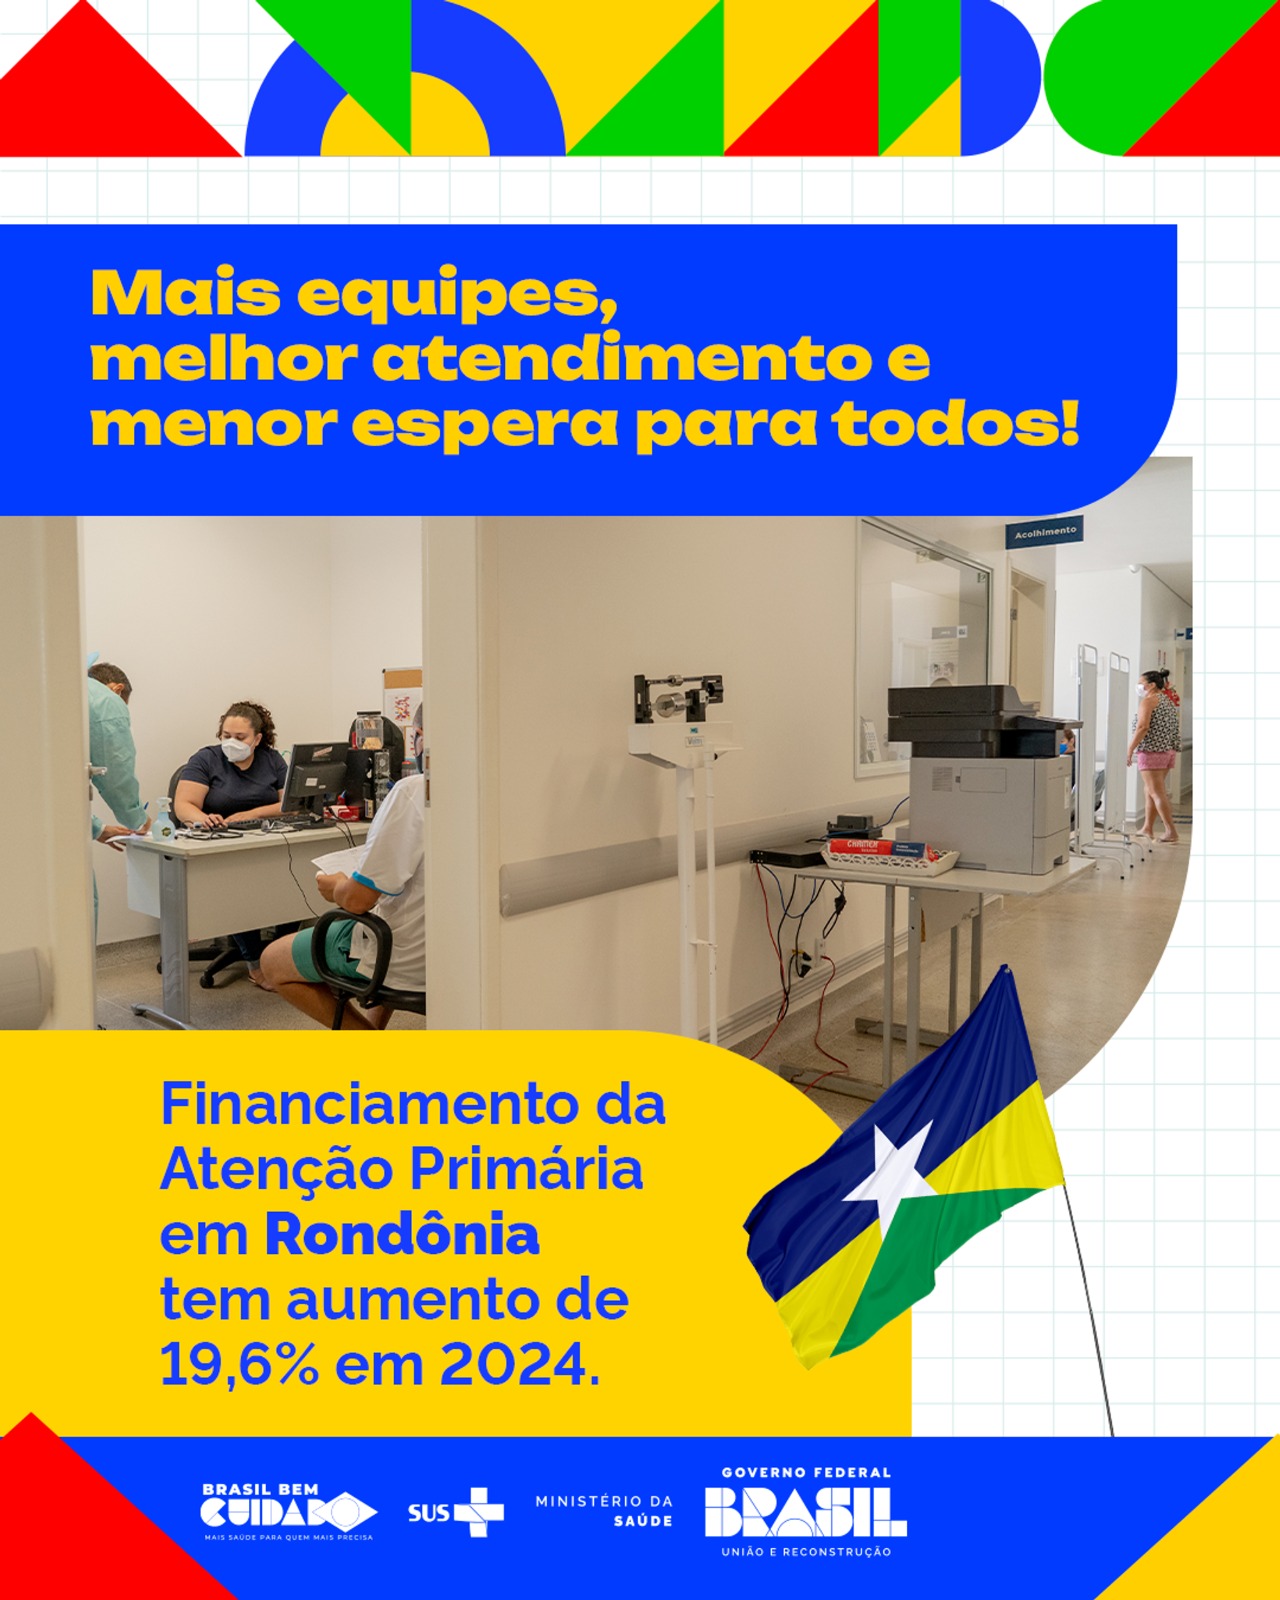 Investimento na Atenção Primária em Rondônia aumenta em 19,6% em 2024